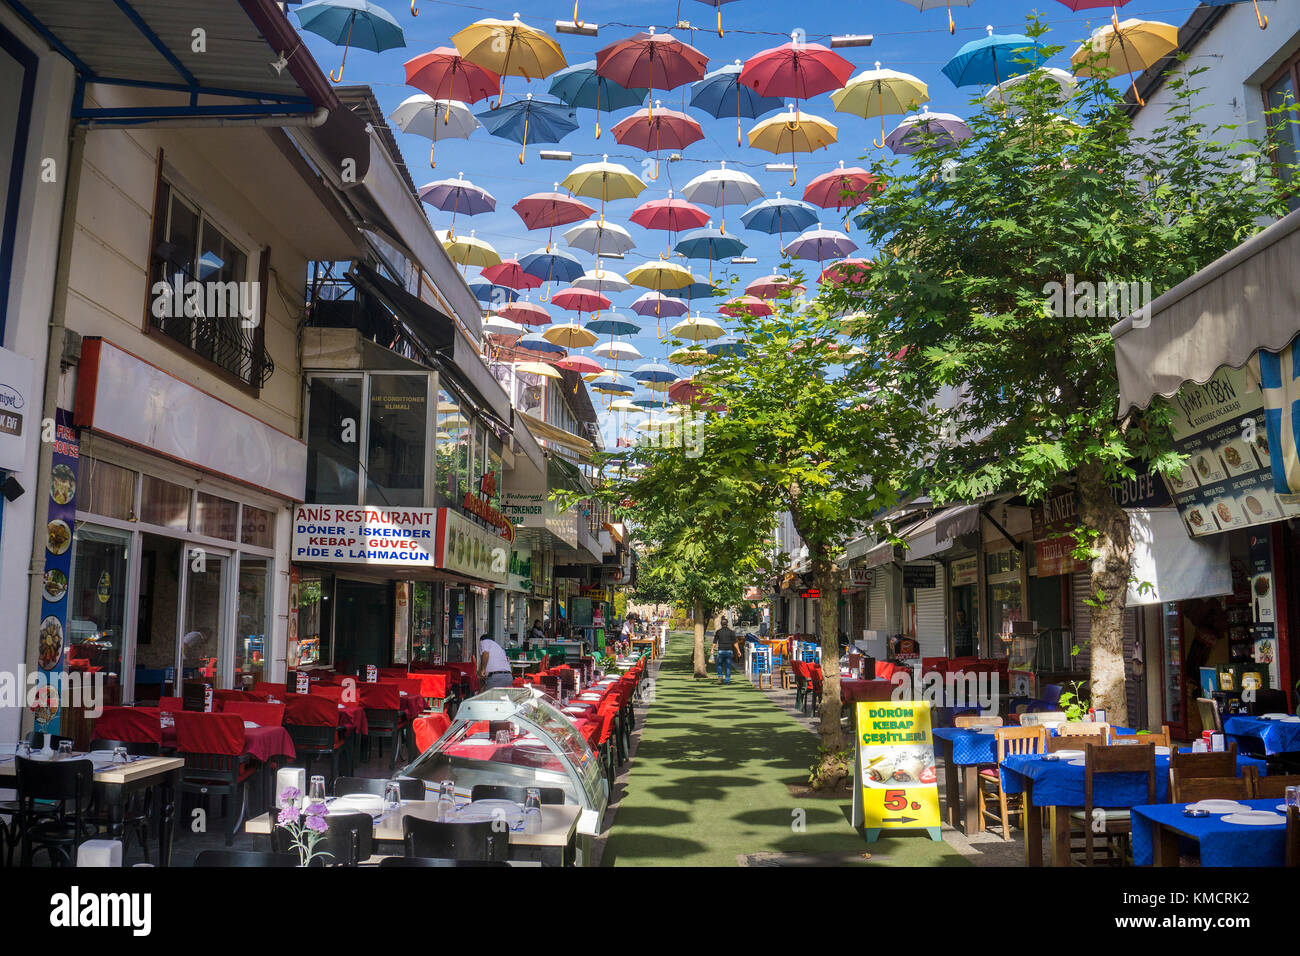 Outside gastronomy at umbrella street, 2.Inoenue Sokak, Kaleici, old town of Antalya, turkish riviera, Turkey Stock Photo